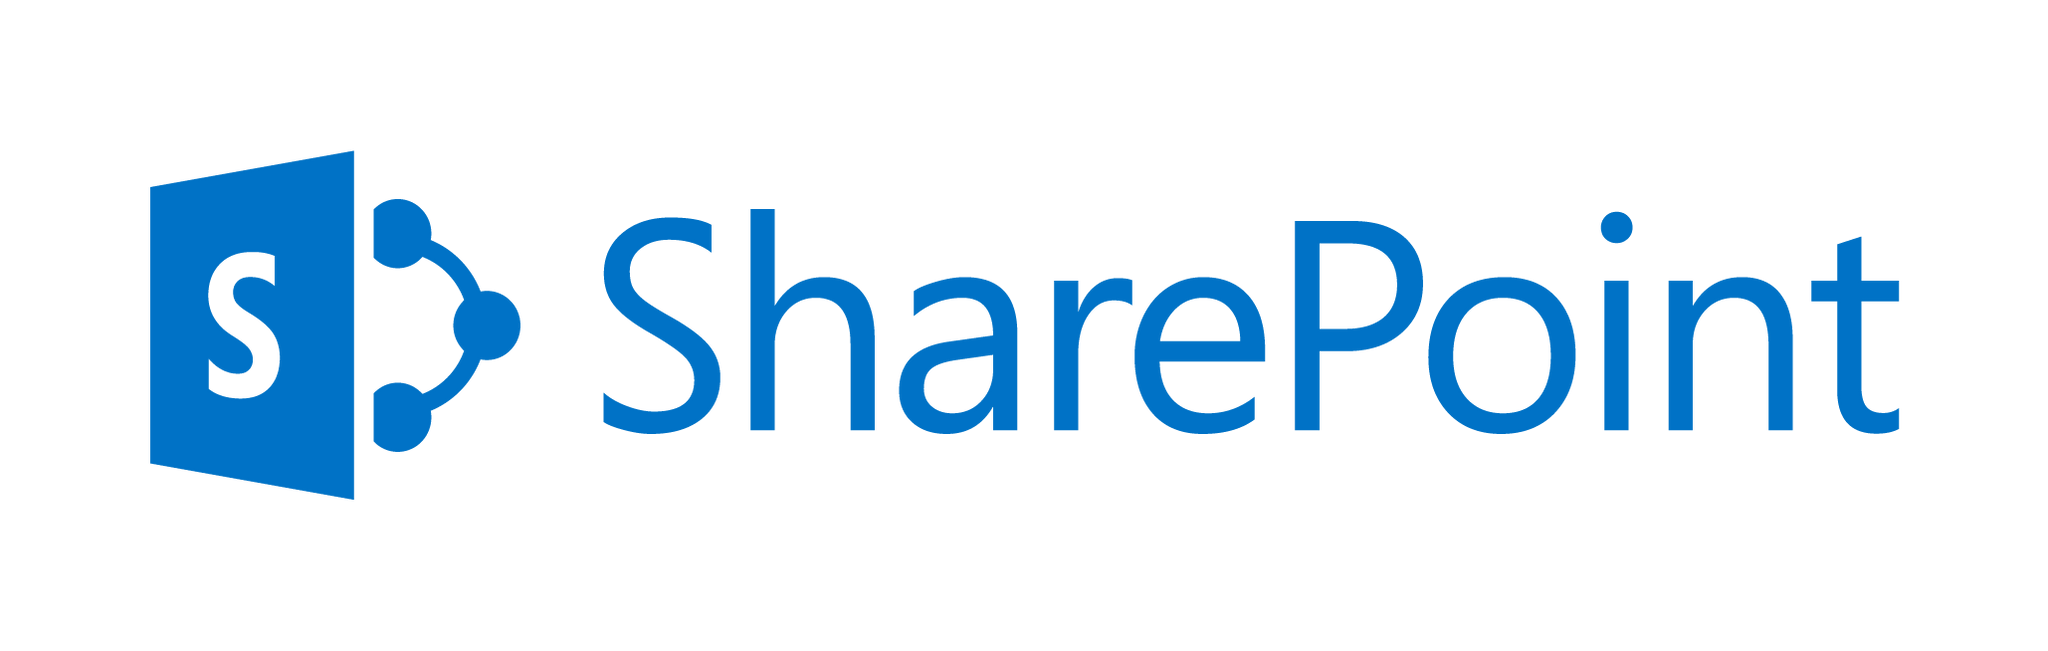 Microsoft Sharepoint có bị hỏng không?